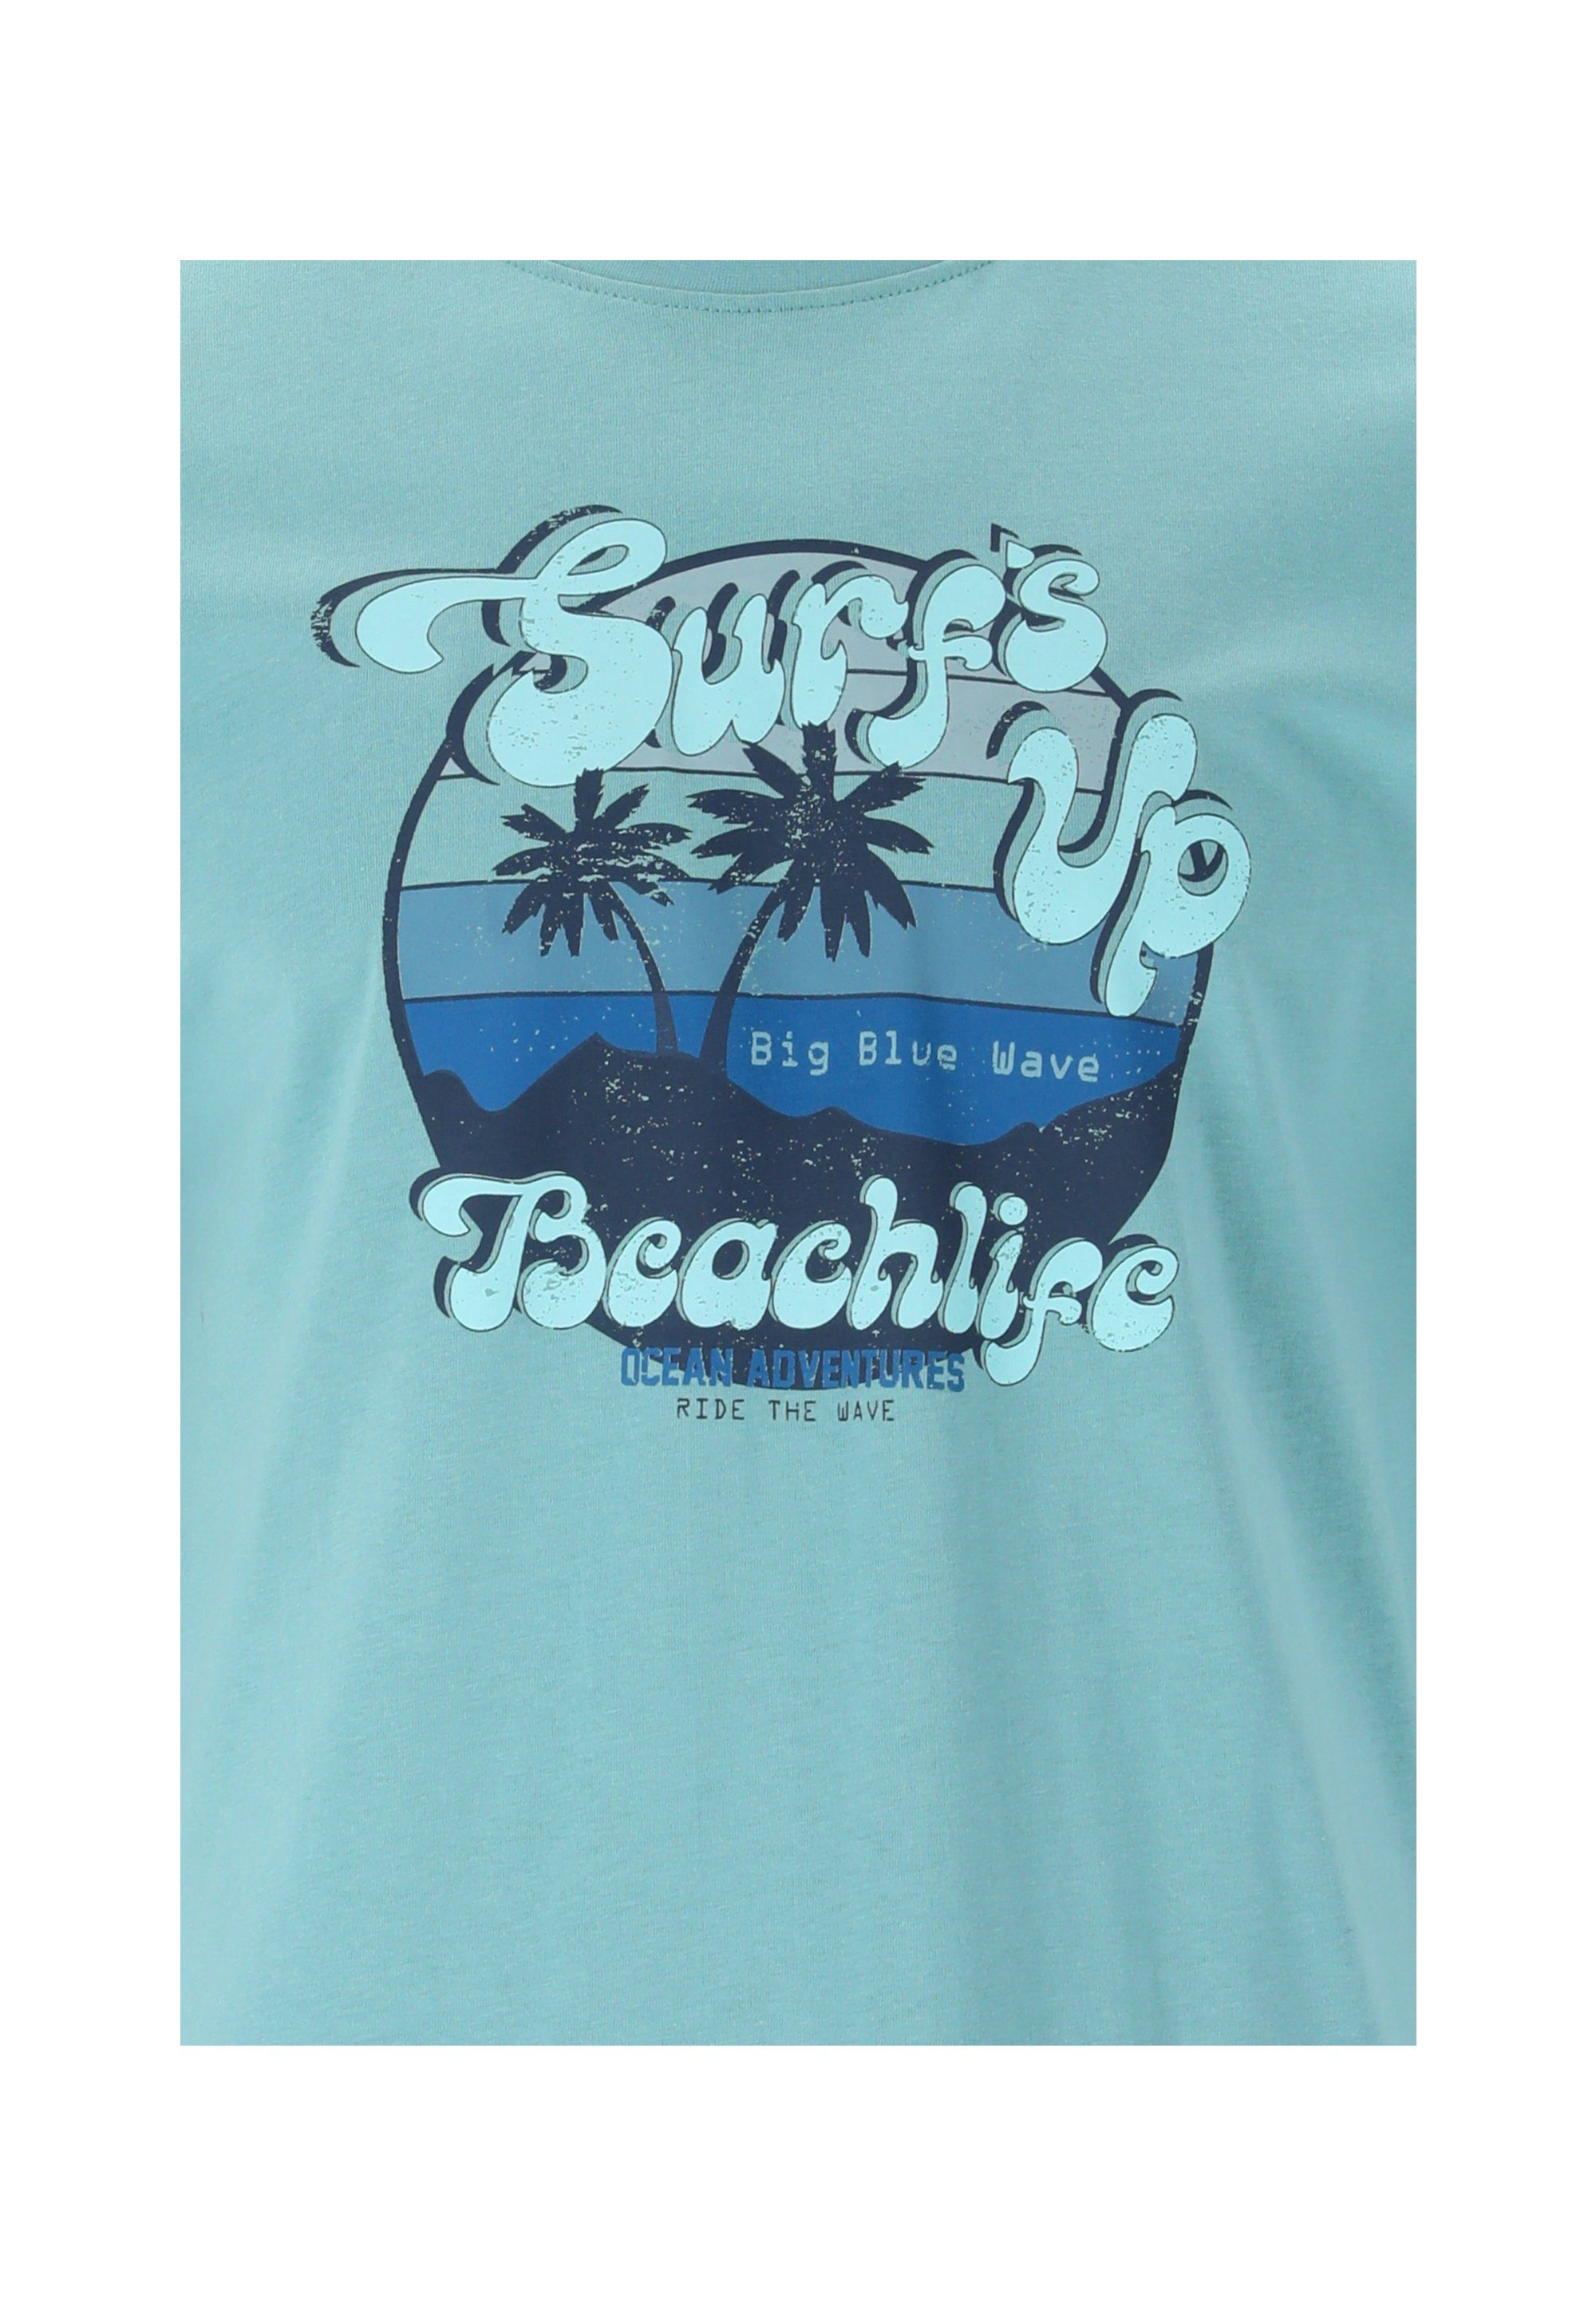 CRUZ T-Shirt Beachlife hellblau atmungsaktiver sommerlichen im Design Qualität mit